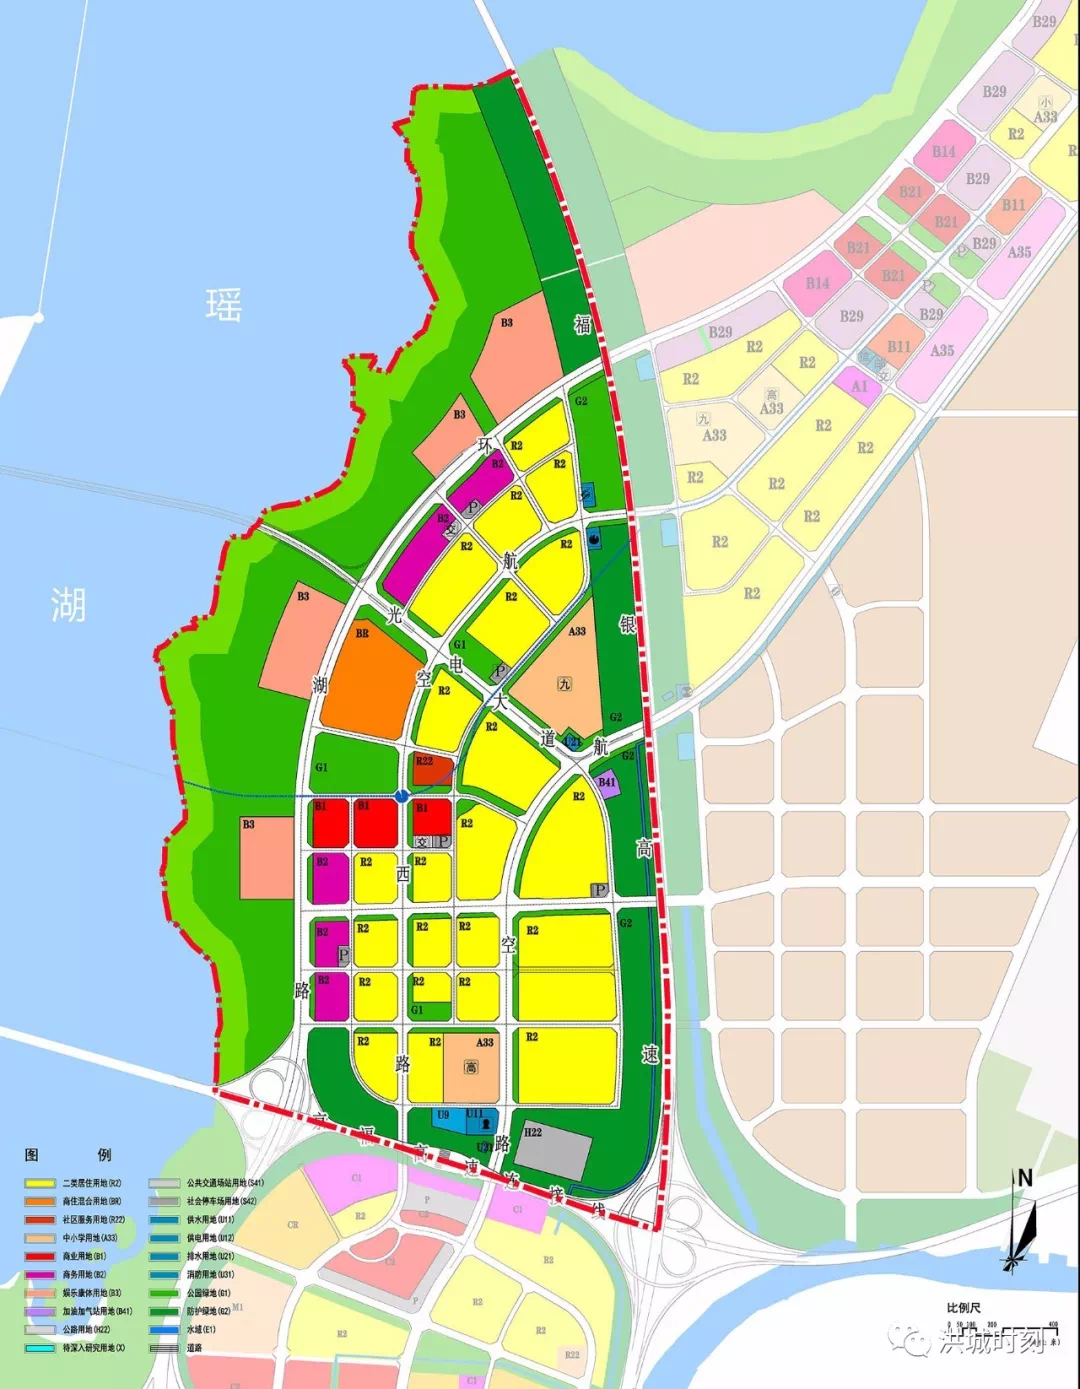 近日,南昌市城乡规划局公示了瑶湖西岸福银高速以西,环湖路以东,紫阳